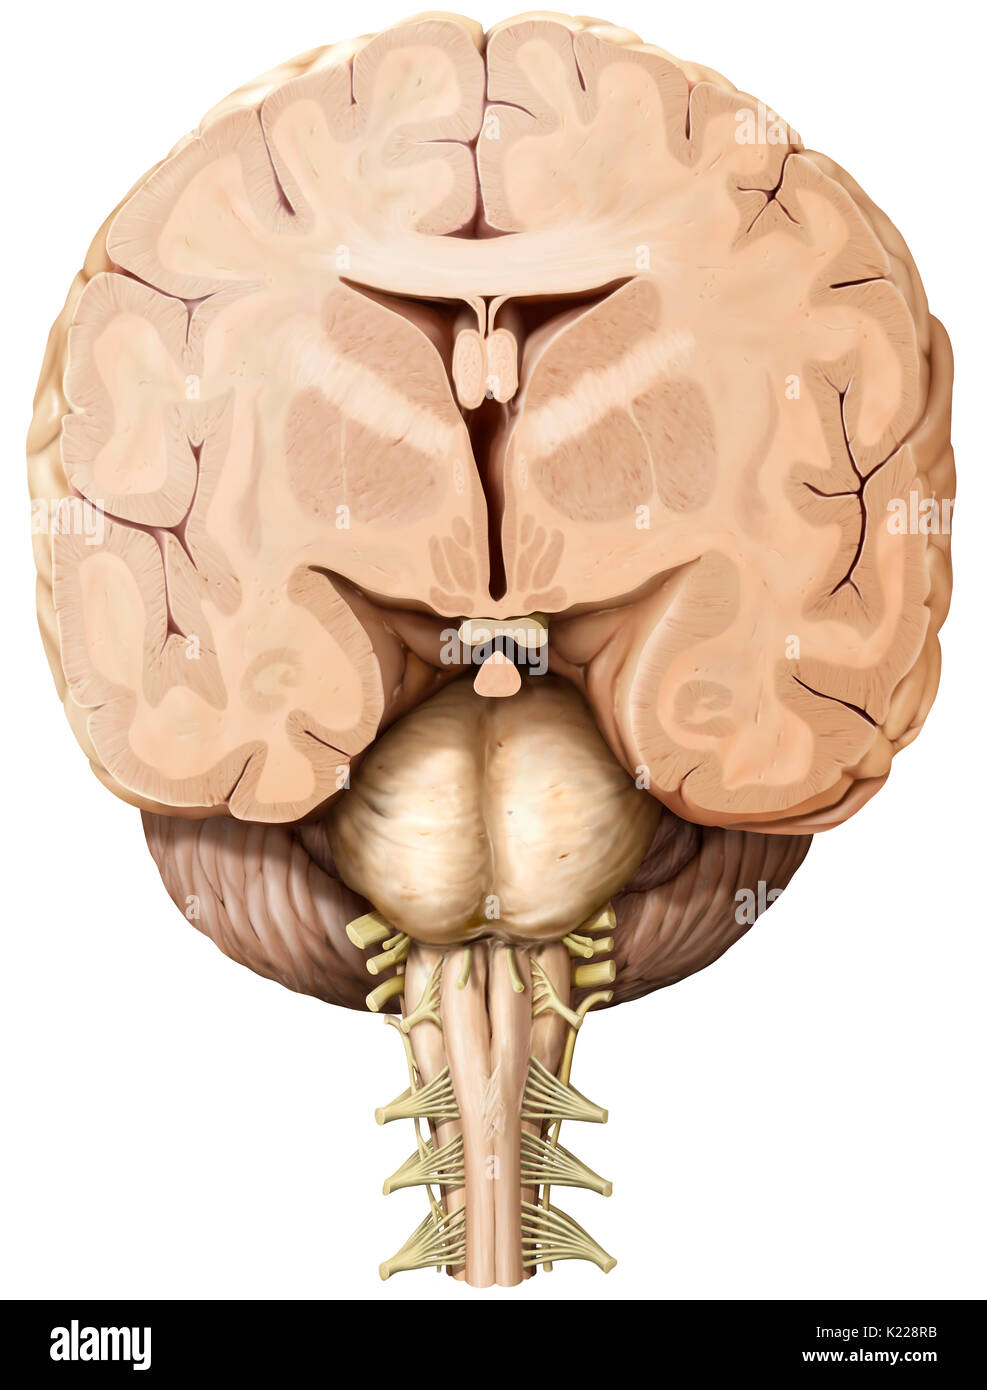 Parte del sistema nervoso centrale racchiuso nel cranio, consistente del cervello, cervelletto e tronco cerebrale ed è responsabile per la percezione sensoriale, la maggior parte dei movimenti, memoria, lingua, i riflessi e le funzioni vitali. Foto Stock